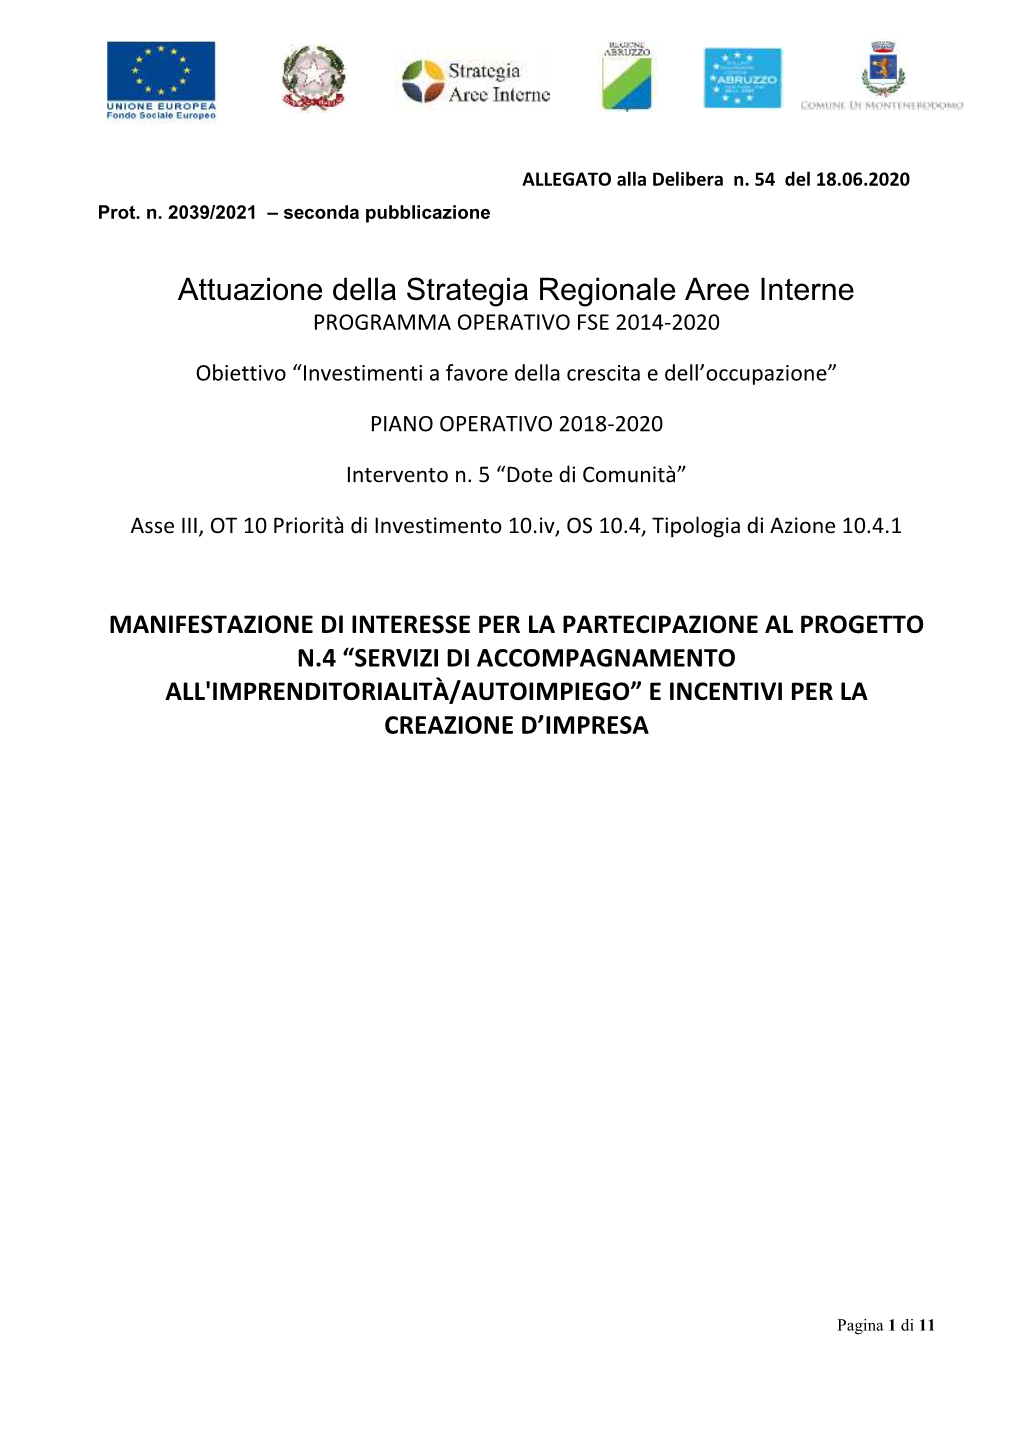 Attuazione Della Strategia Regionale Aree Interne PROGRAMMA OPERATIVO FSE 2014-2020